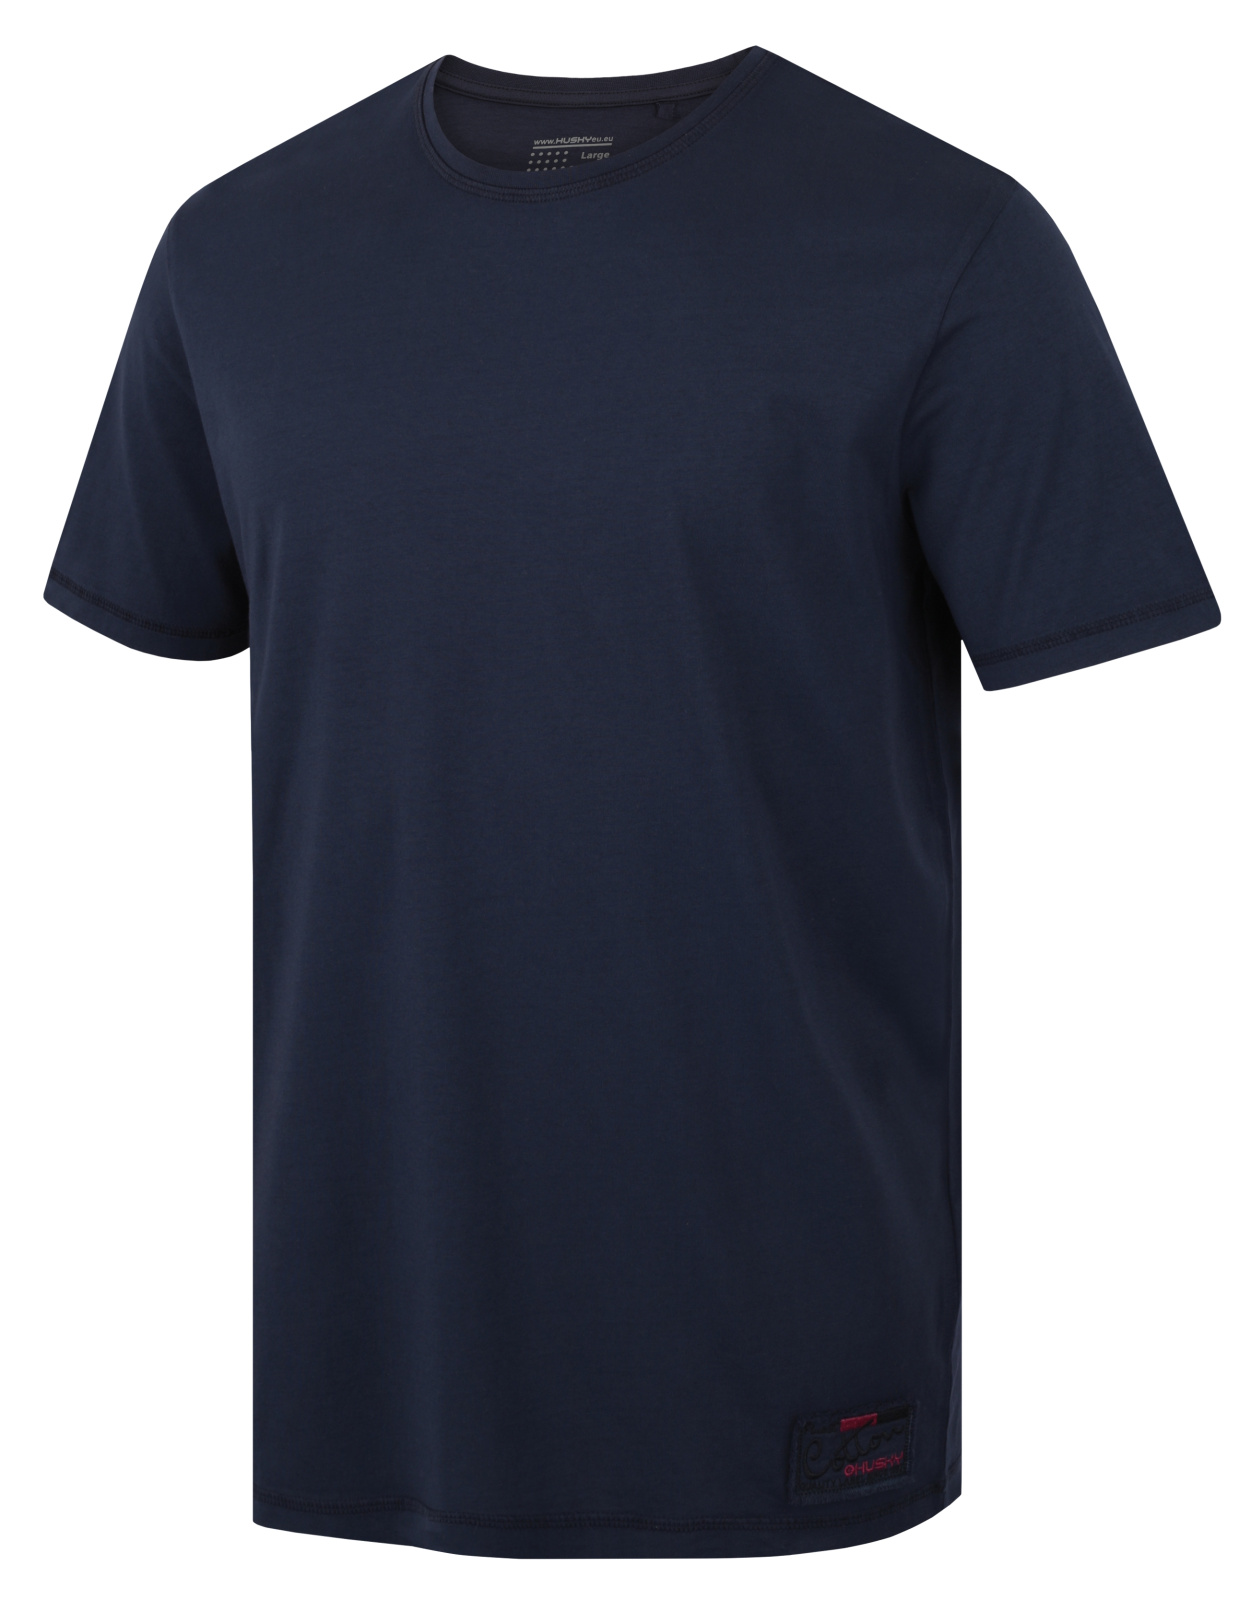 Husky Pánské bavlněné triko Tee Base M dark blue Velikost: S pánské tričko s krátkým rukávem